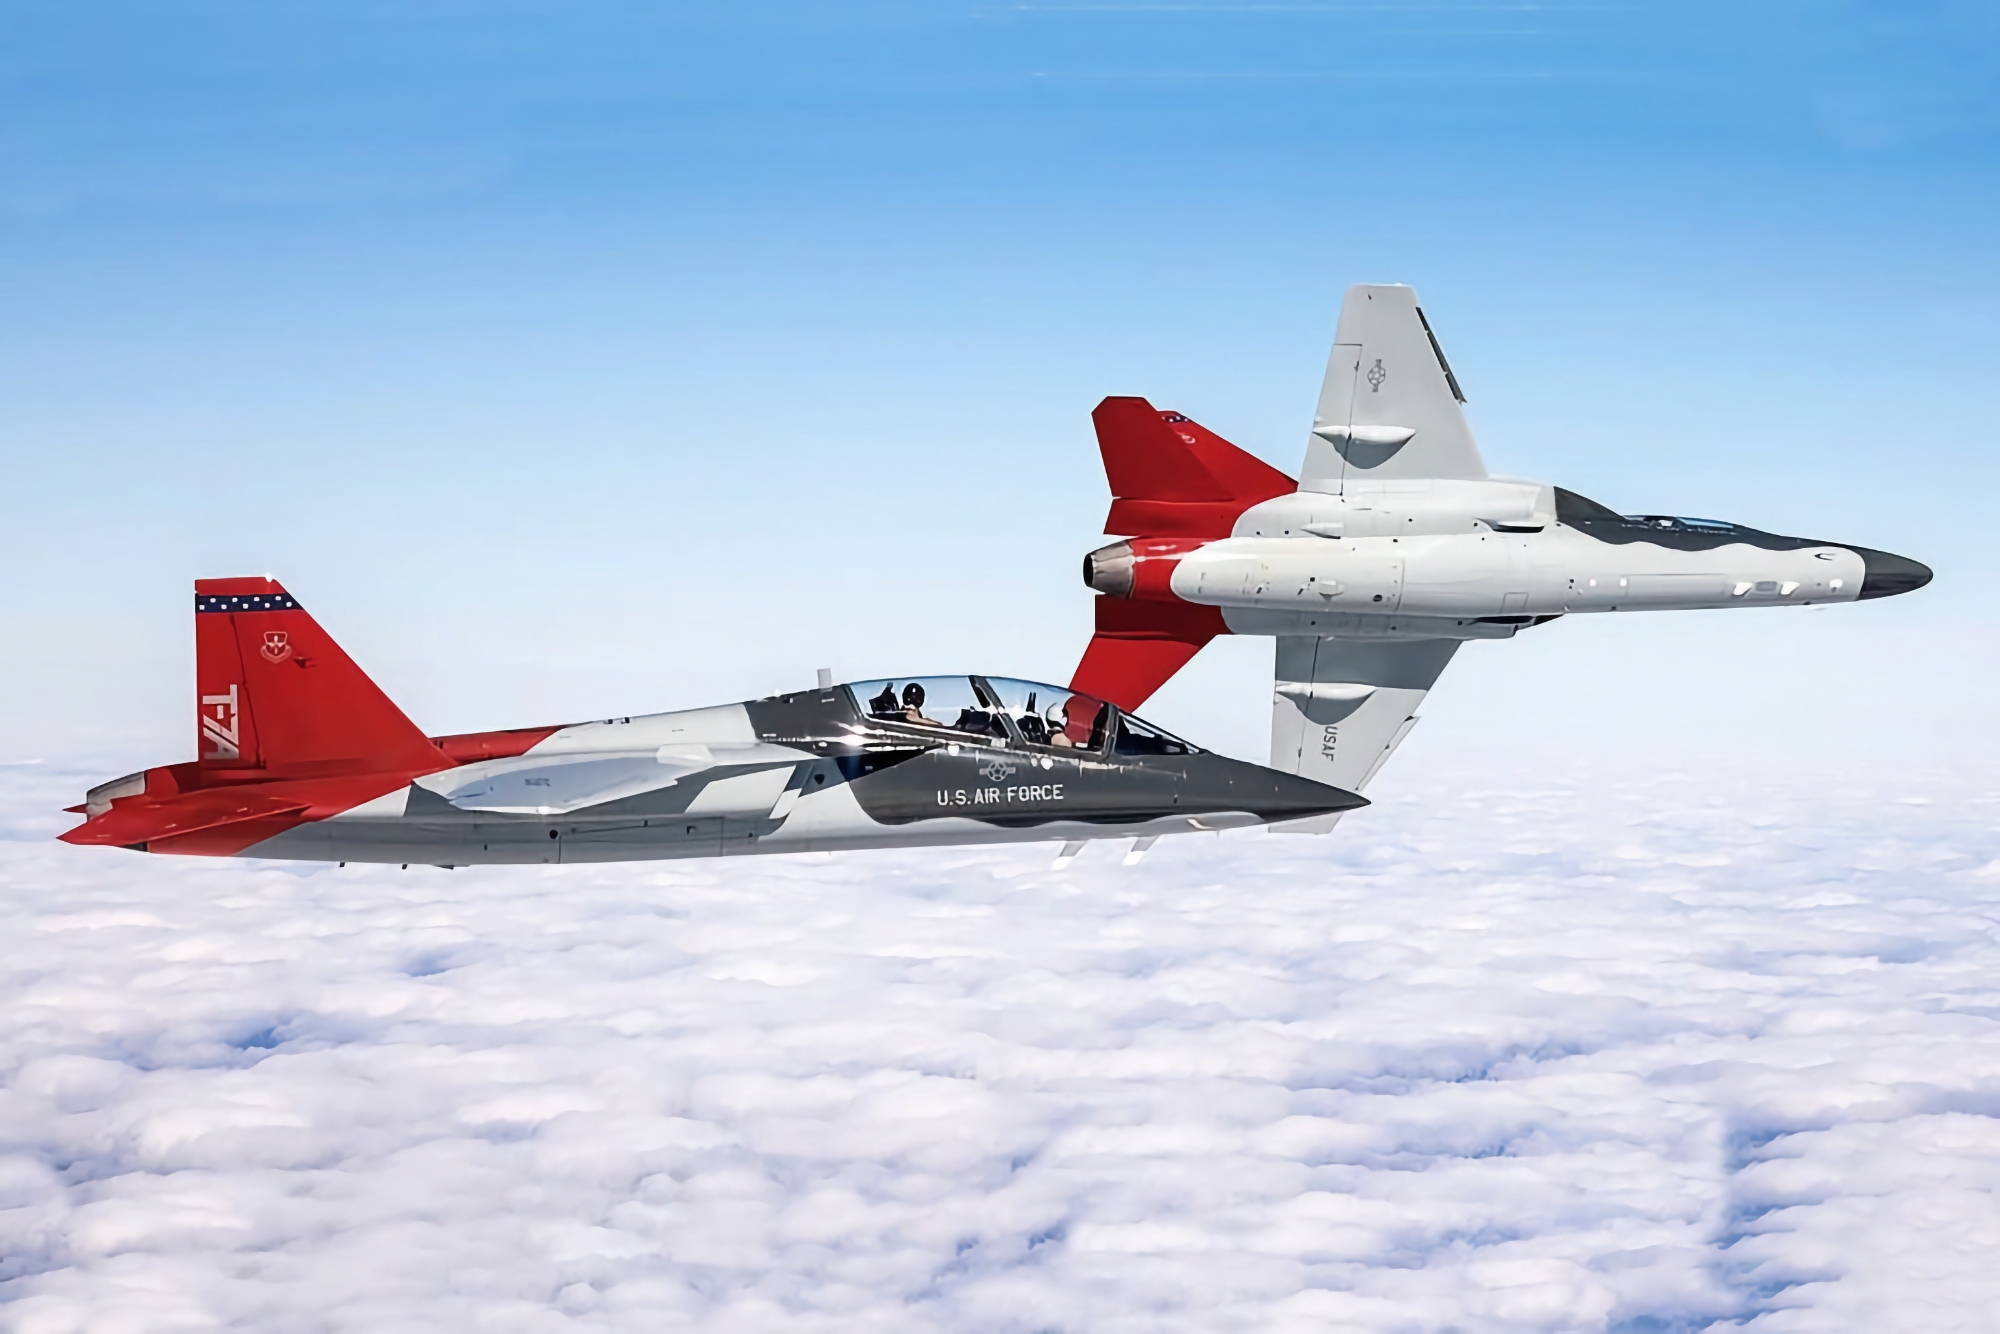 Japón estudia comprar un avión de entrenamiento Boeing T-7 A Red Hawk a EE.UU.